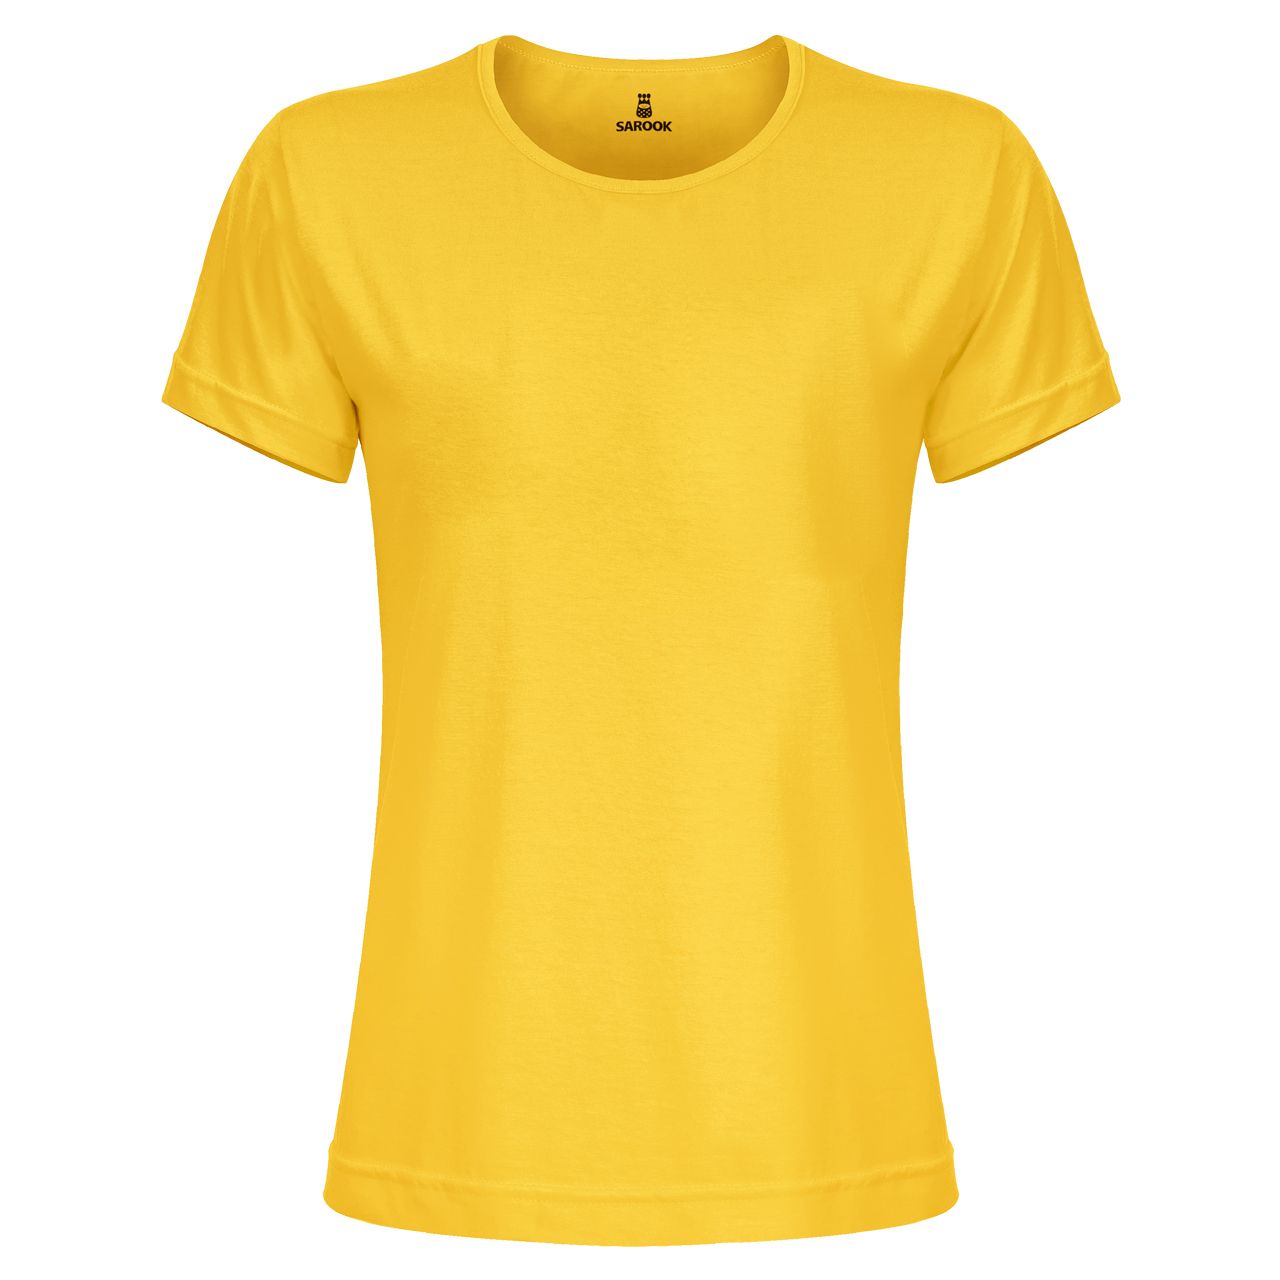 تی شرت آستین کوتاه زنانه ساروک مدل TSHPYR کد 05 رنگ زرد -  - 1